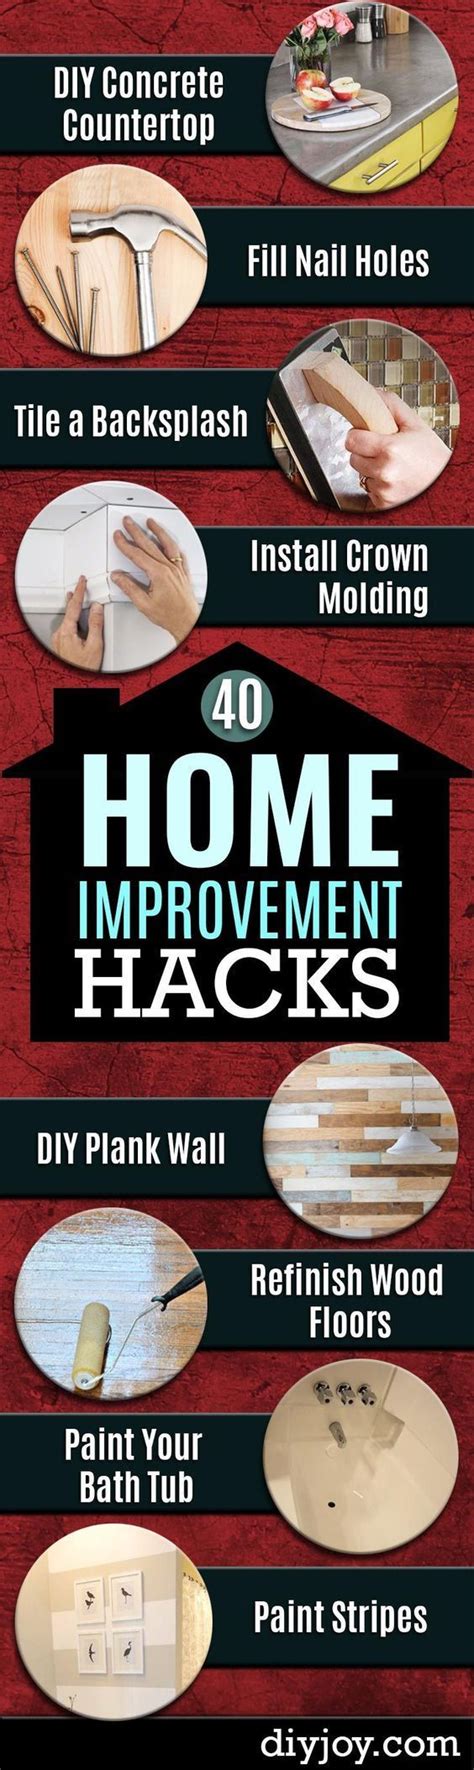 41 Diy Home Improvement Hacks Home Remodeling Diy Home Repair Home